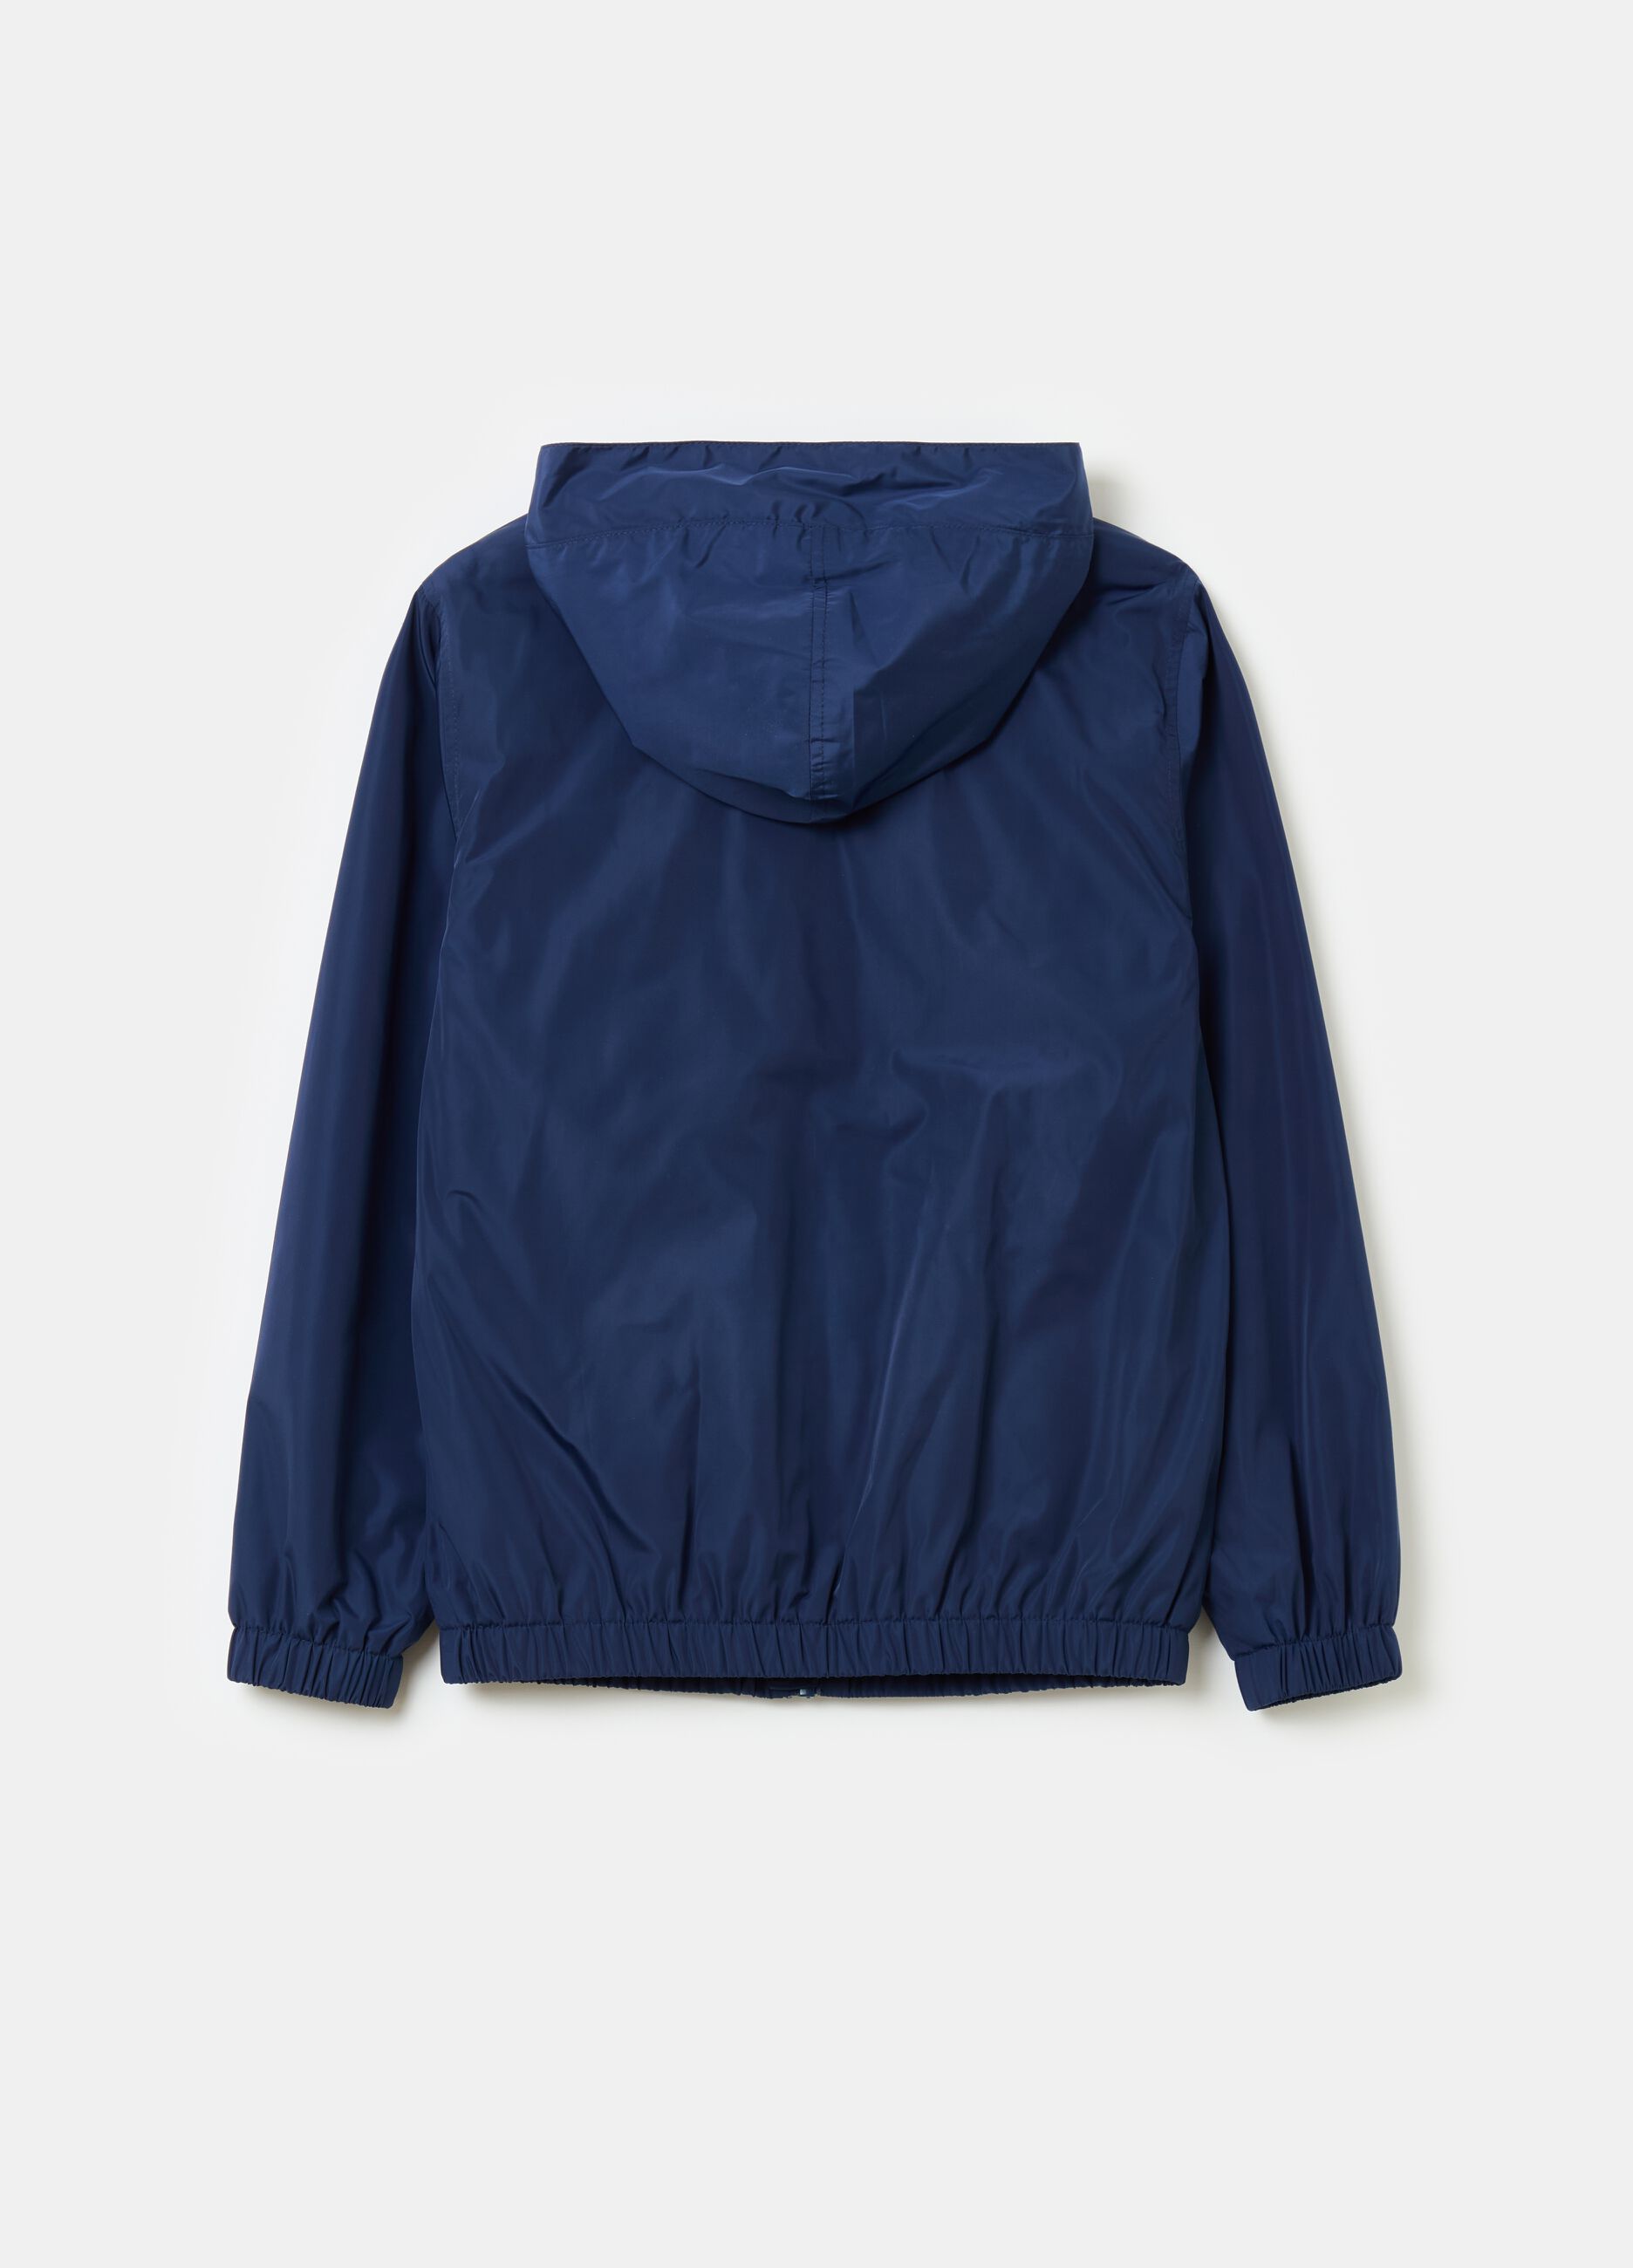 Full-zip waterproof jacket with hood